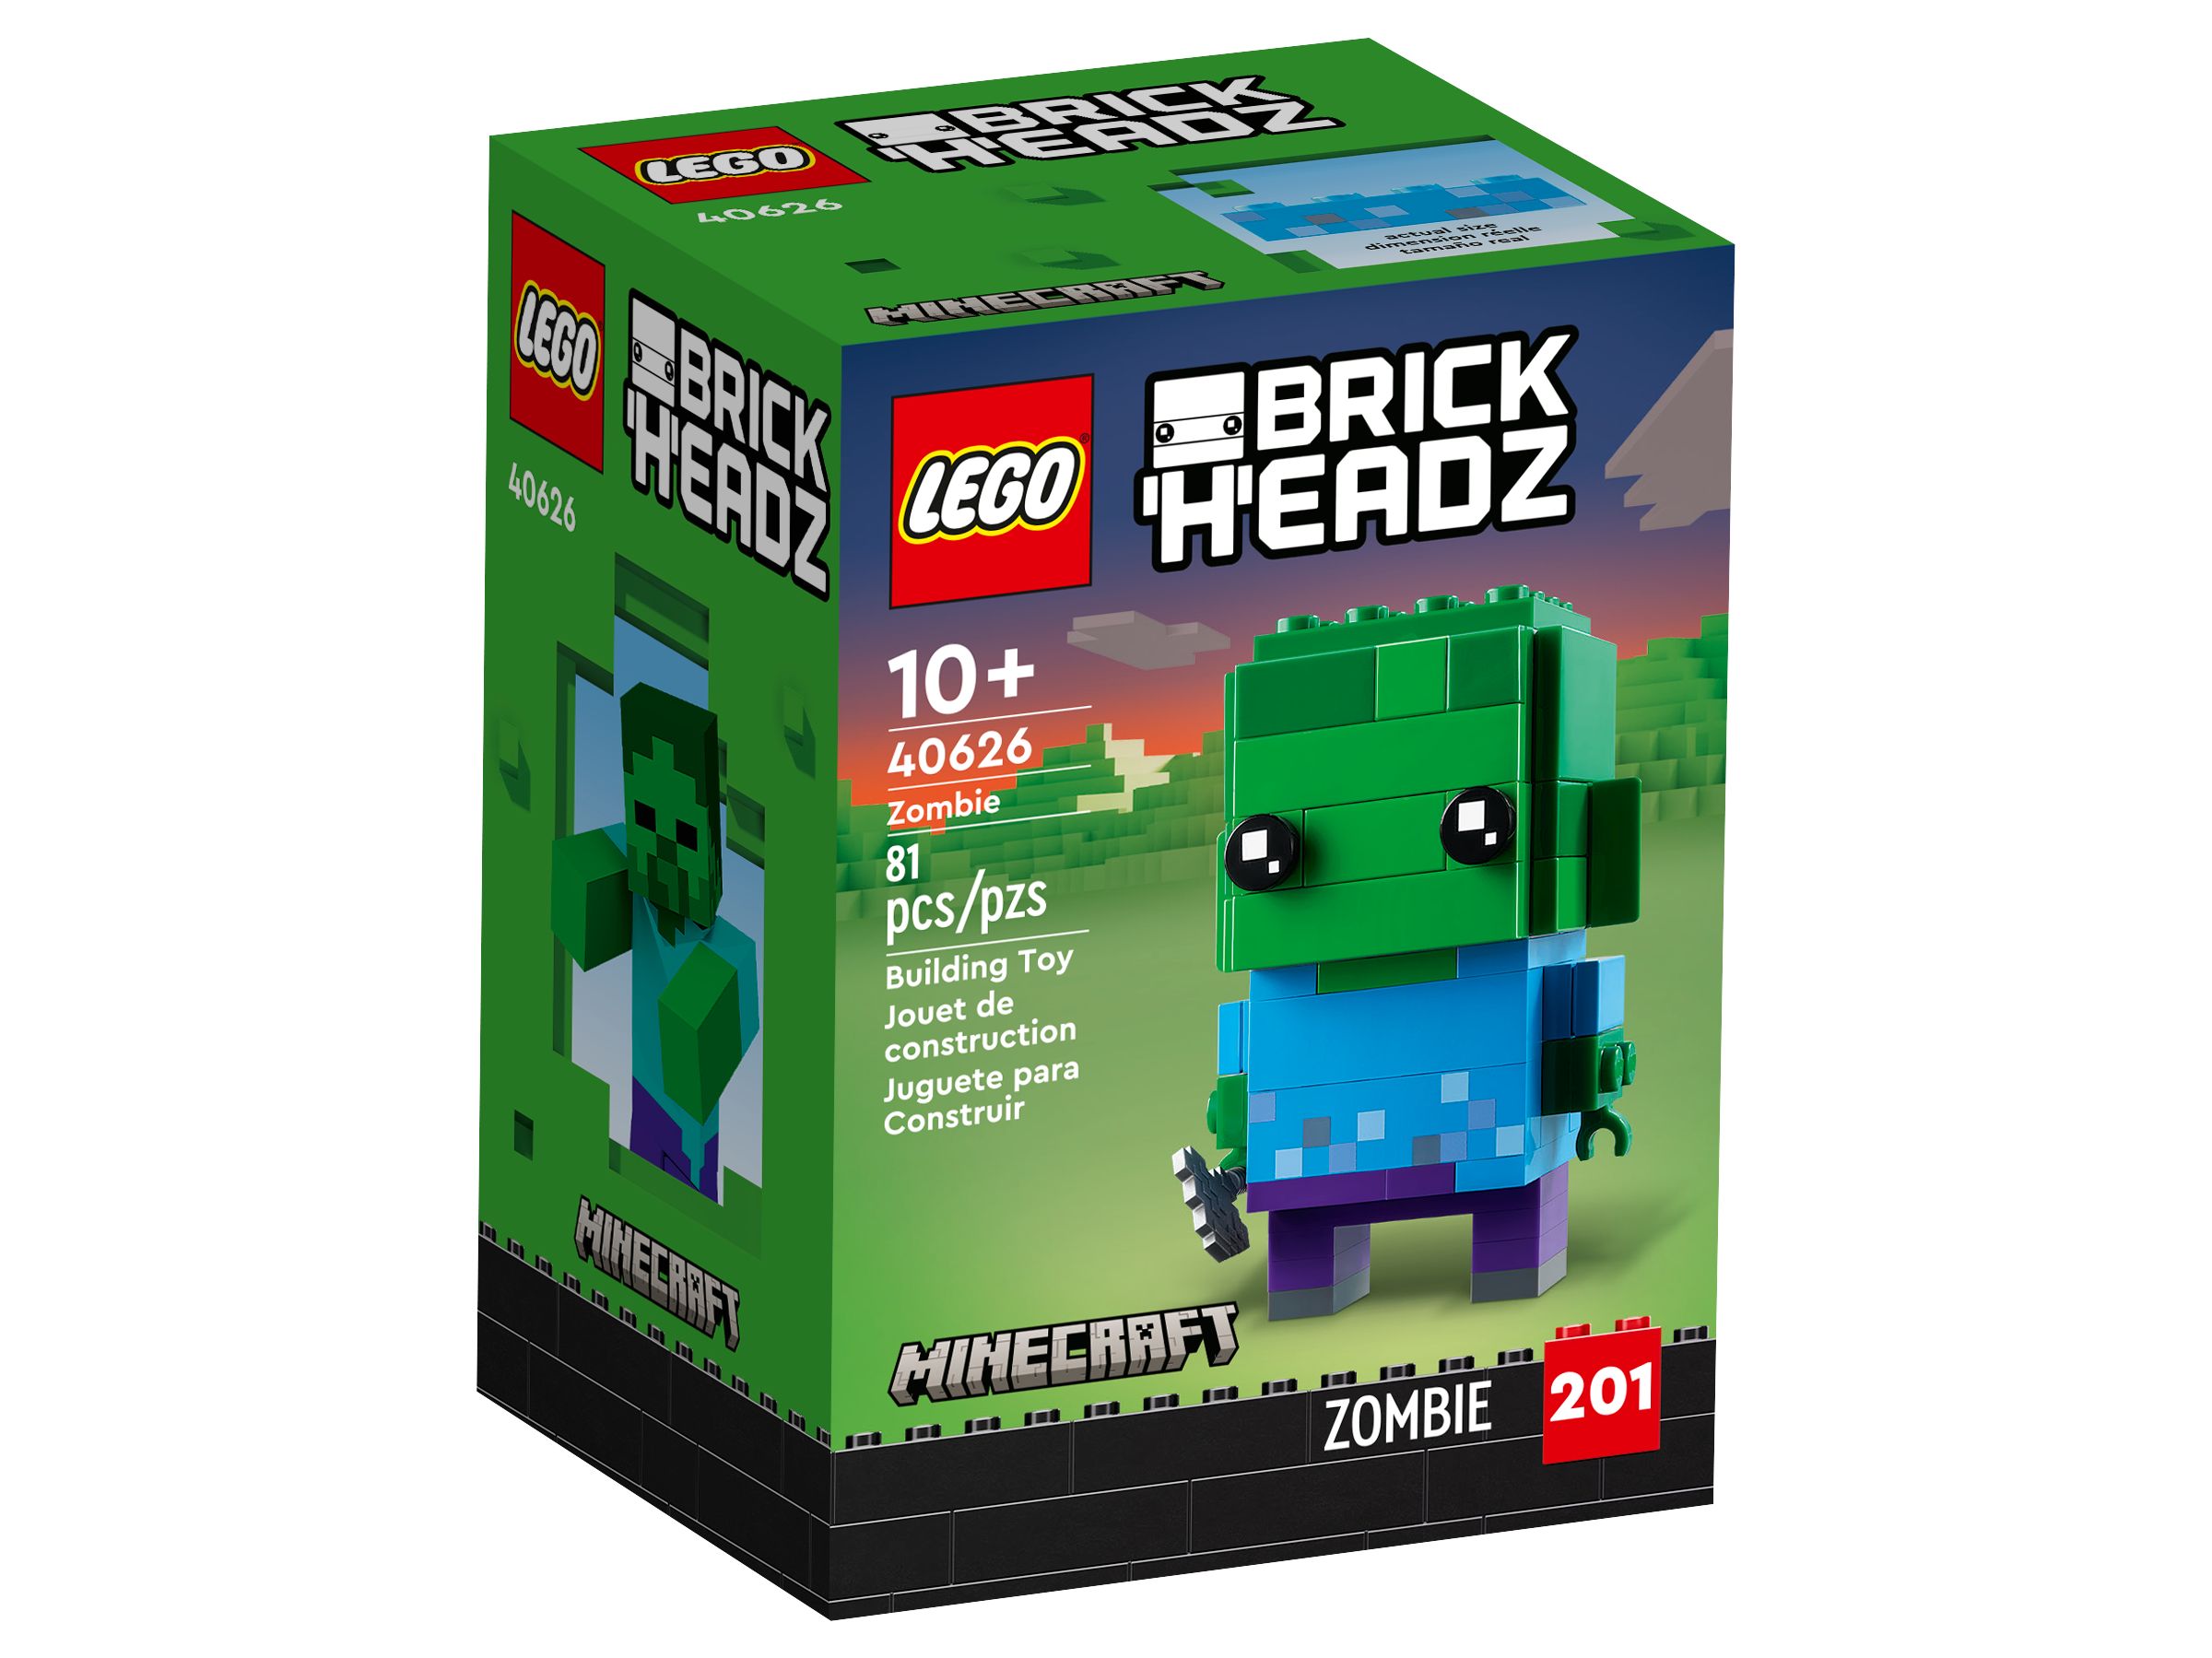 LEGO BrickHeadz 40626 Zombie LEGO_40626_Box1_v39.jpg